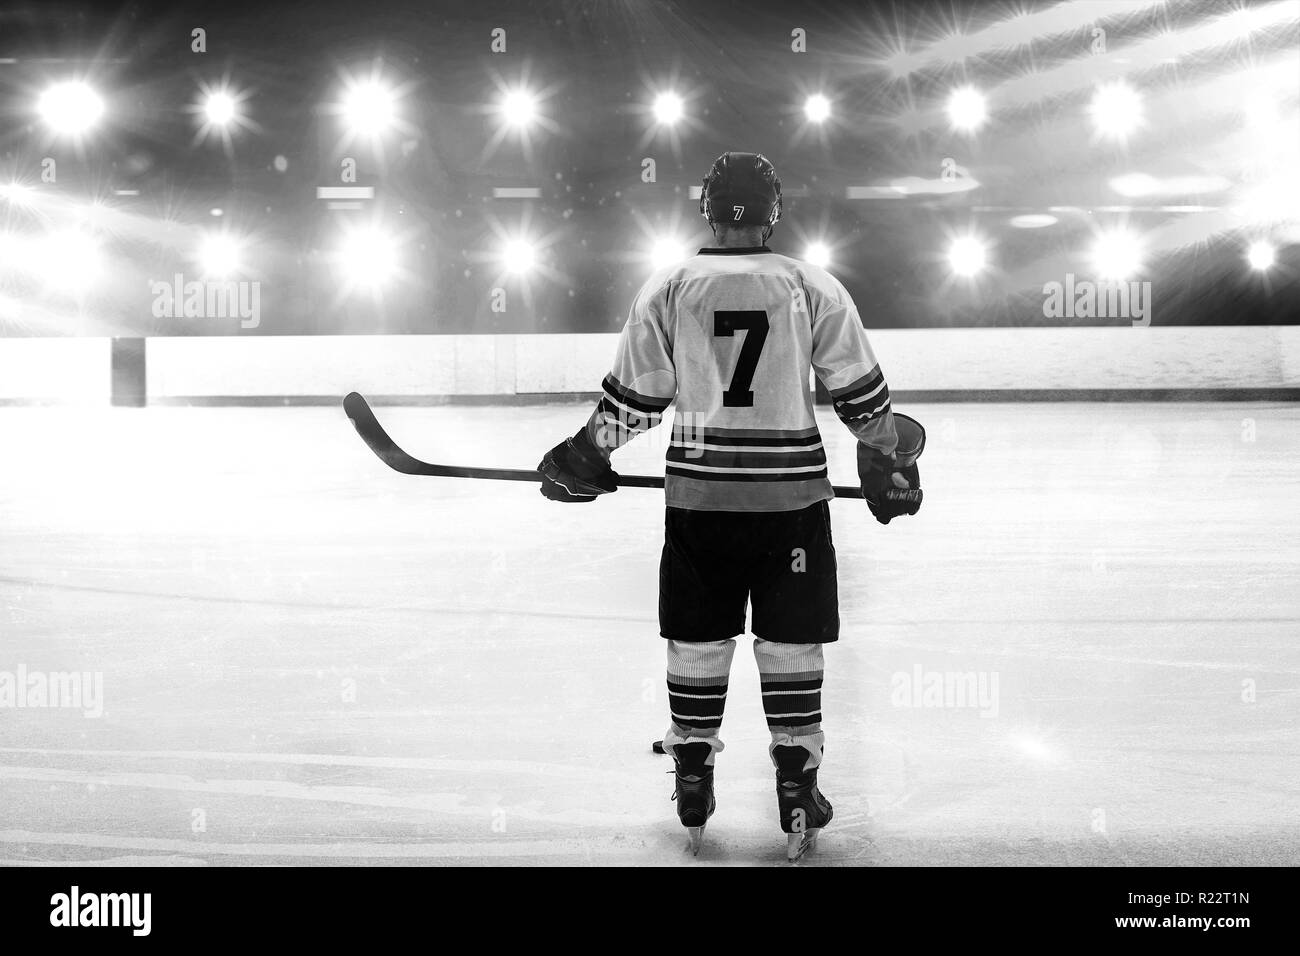 Immagine composita del giocatore di hockey con la mazza da hockey in piedi sul ghiaccio Foto Stock